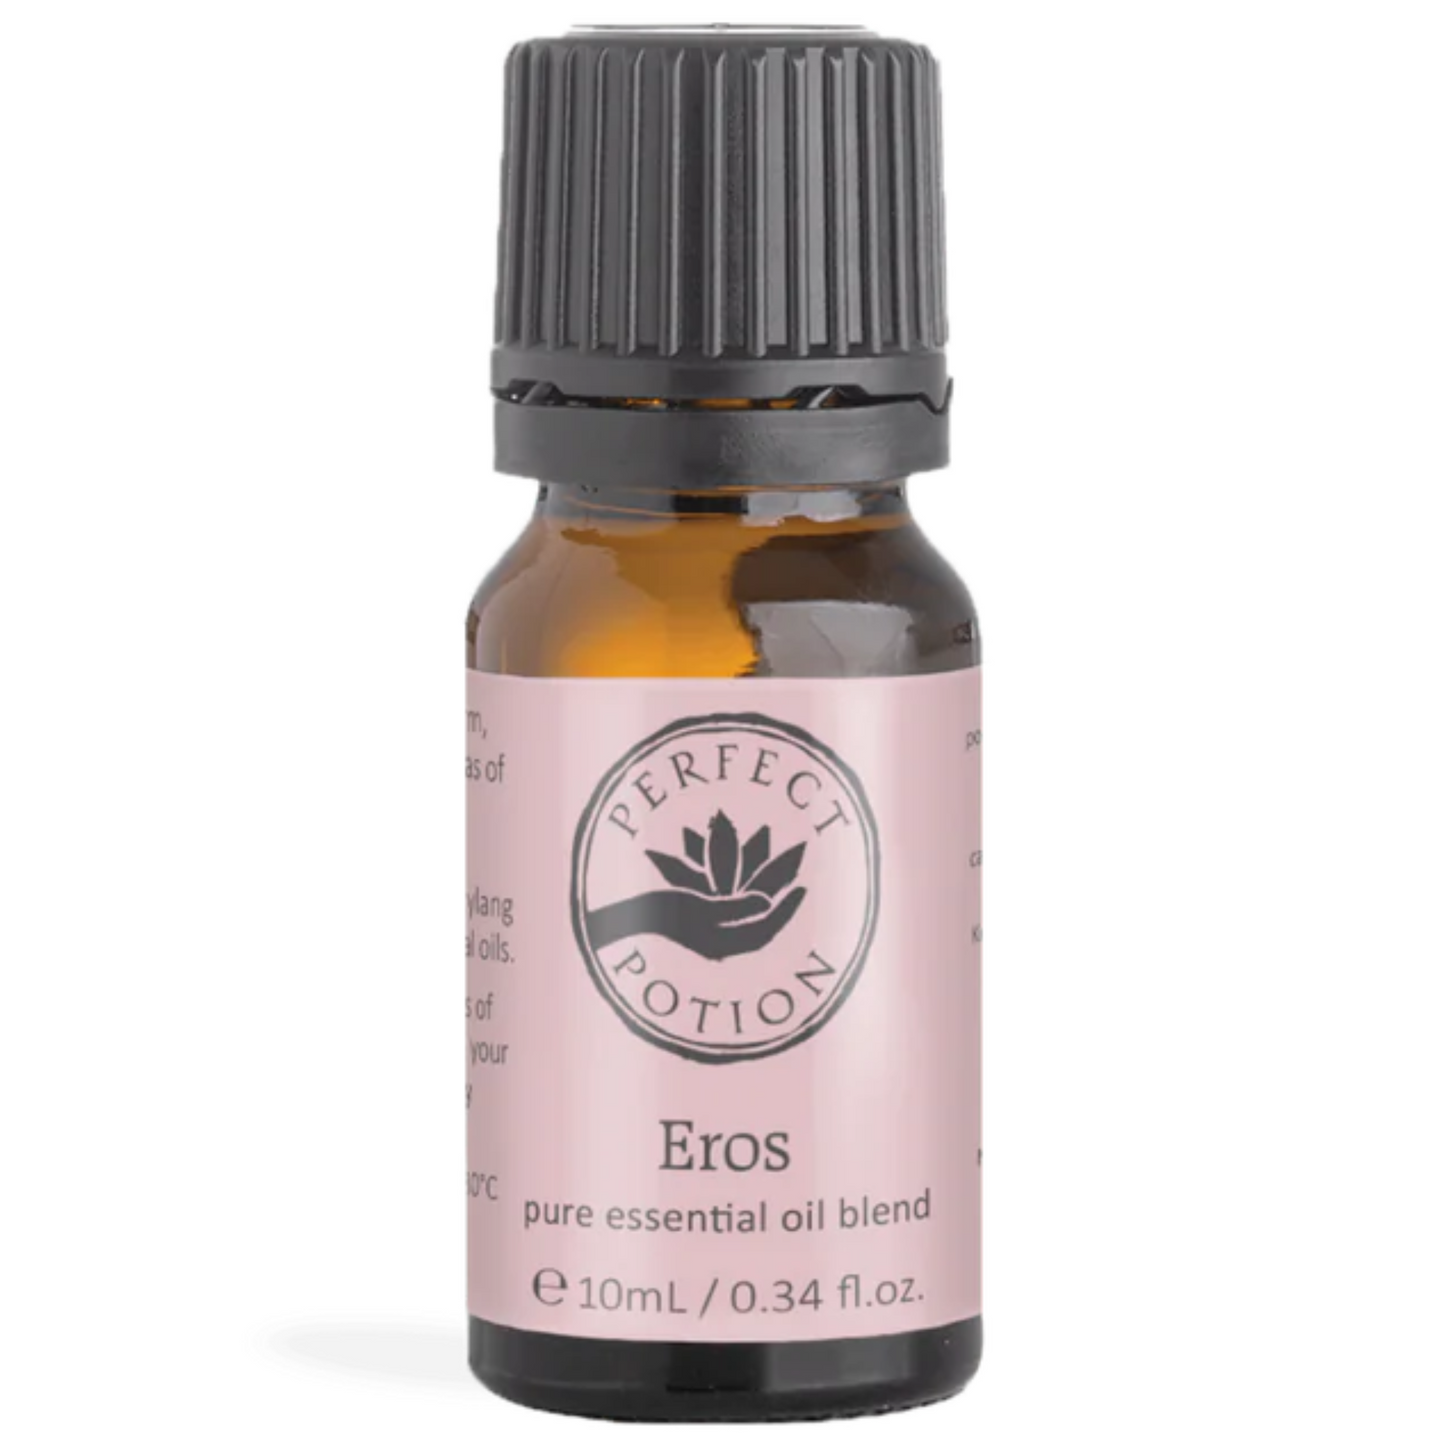 Eros Essential Oil Blend